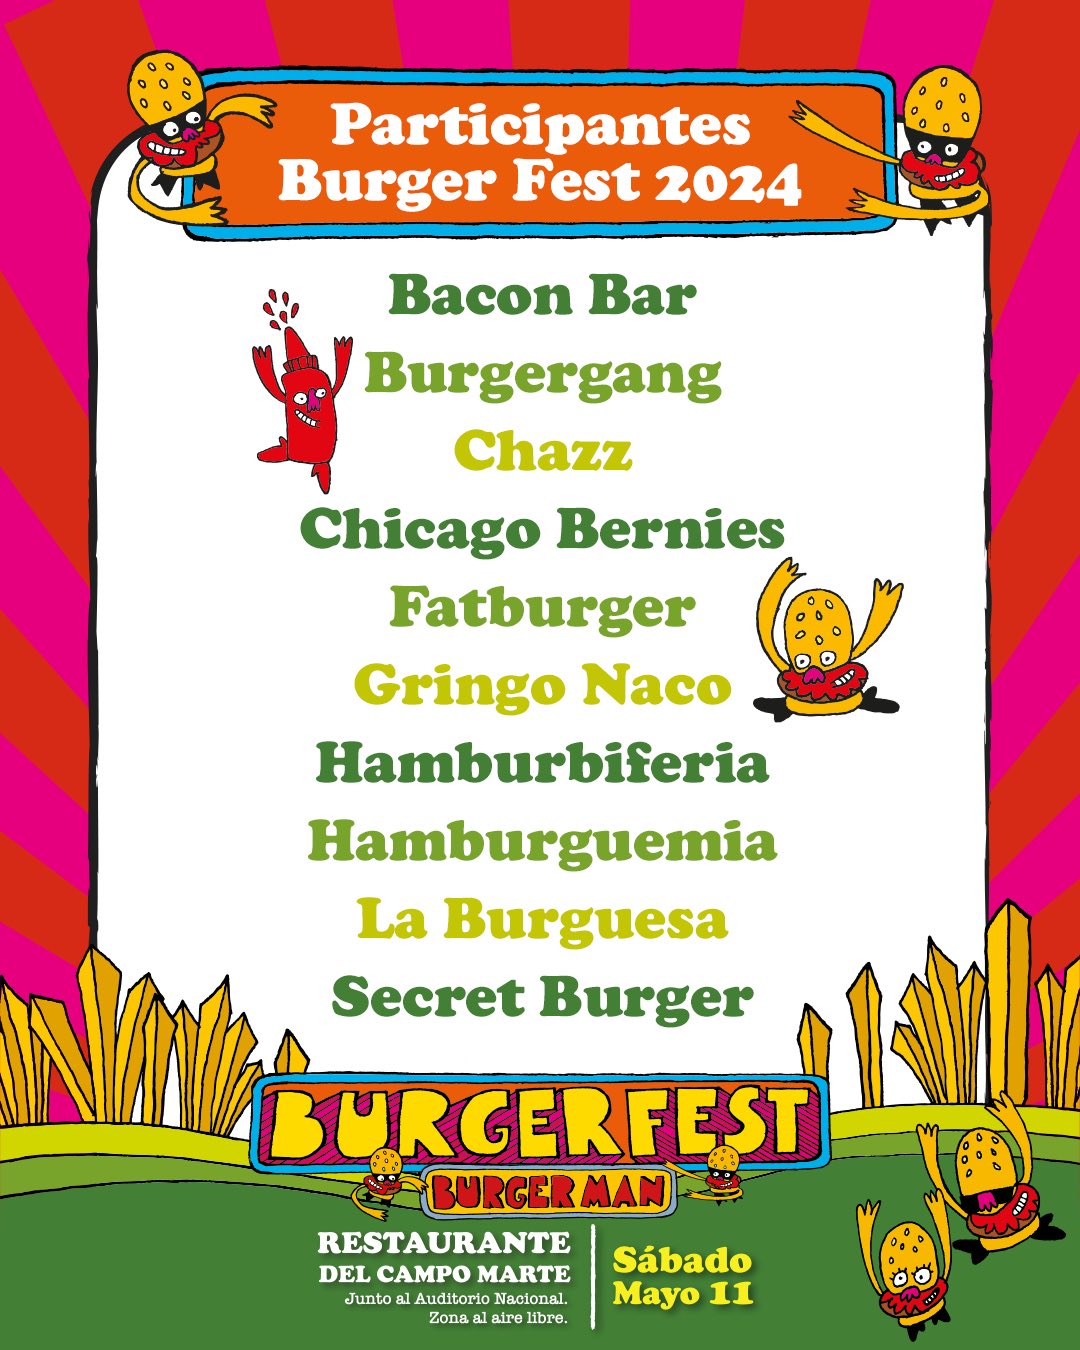 Burger Fest 2024 tendrá más de 30 restaurantes presentes 17